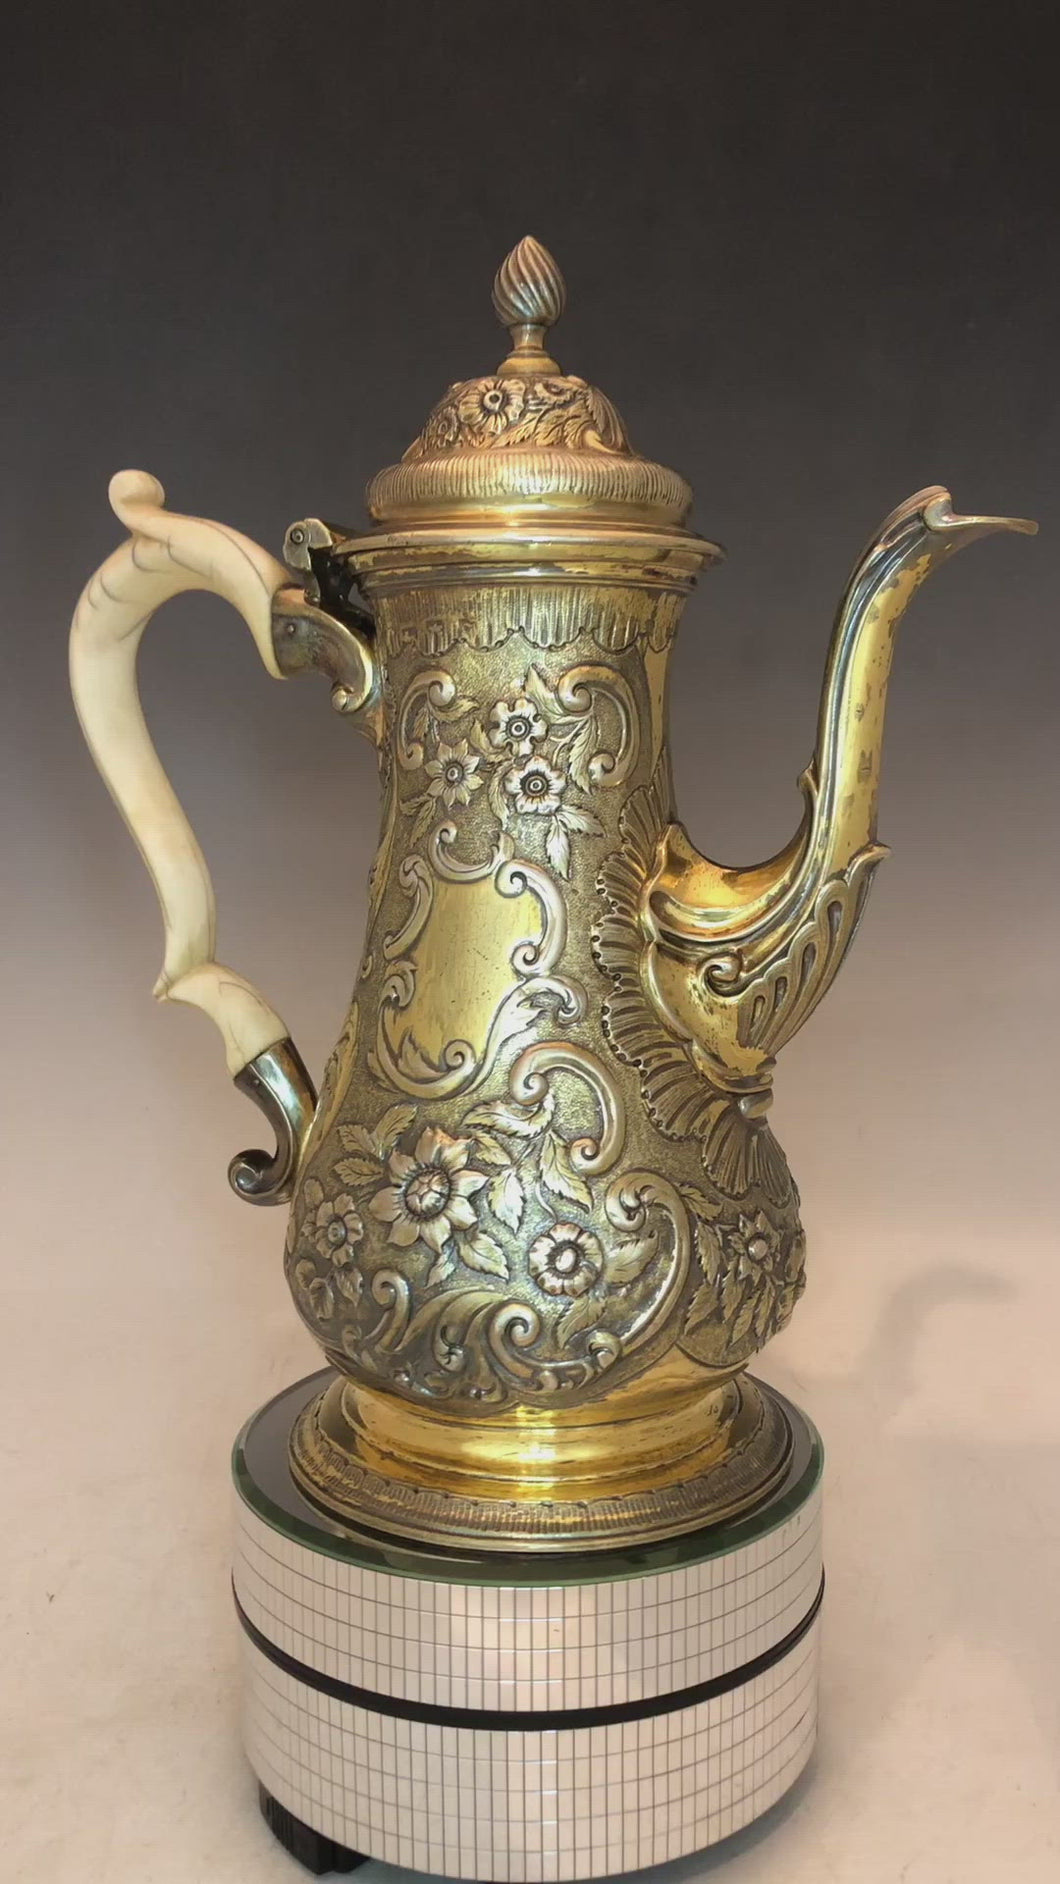 Antica caffettiera in argento dorato e manico interamente in avorio scolpito. Realizzata a Londra nell’anno 1764